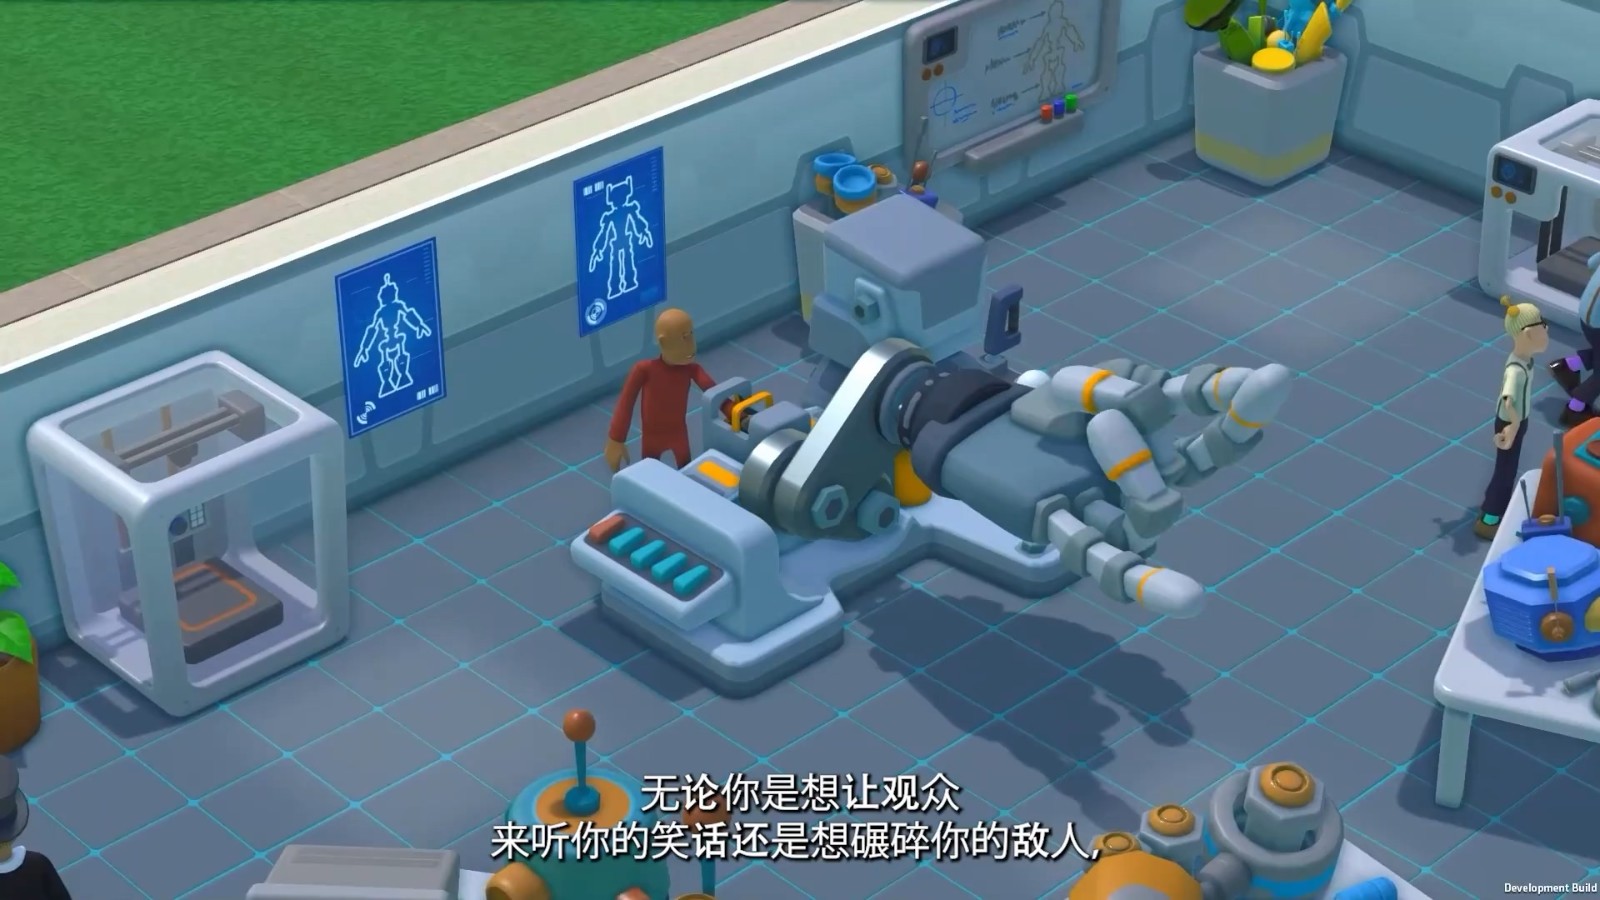 《双点校园》“机器人系”预告 打造自己的巨型机器人